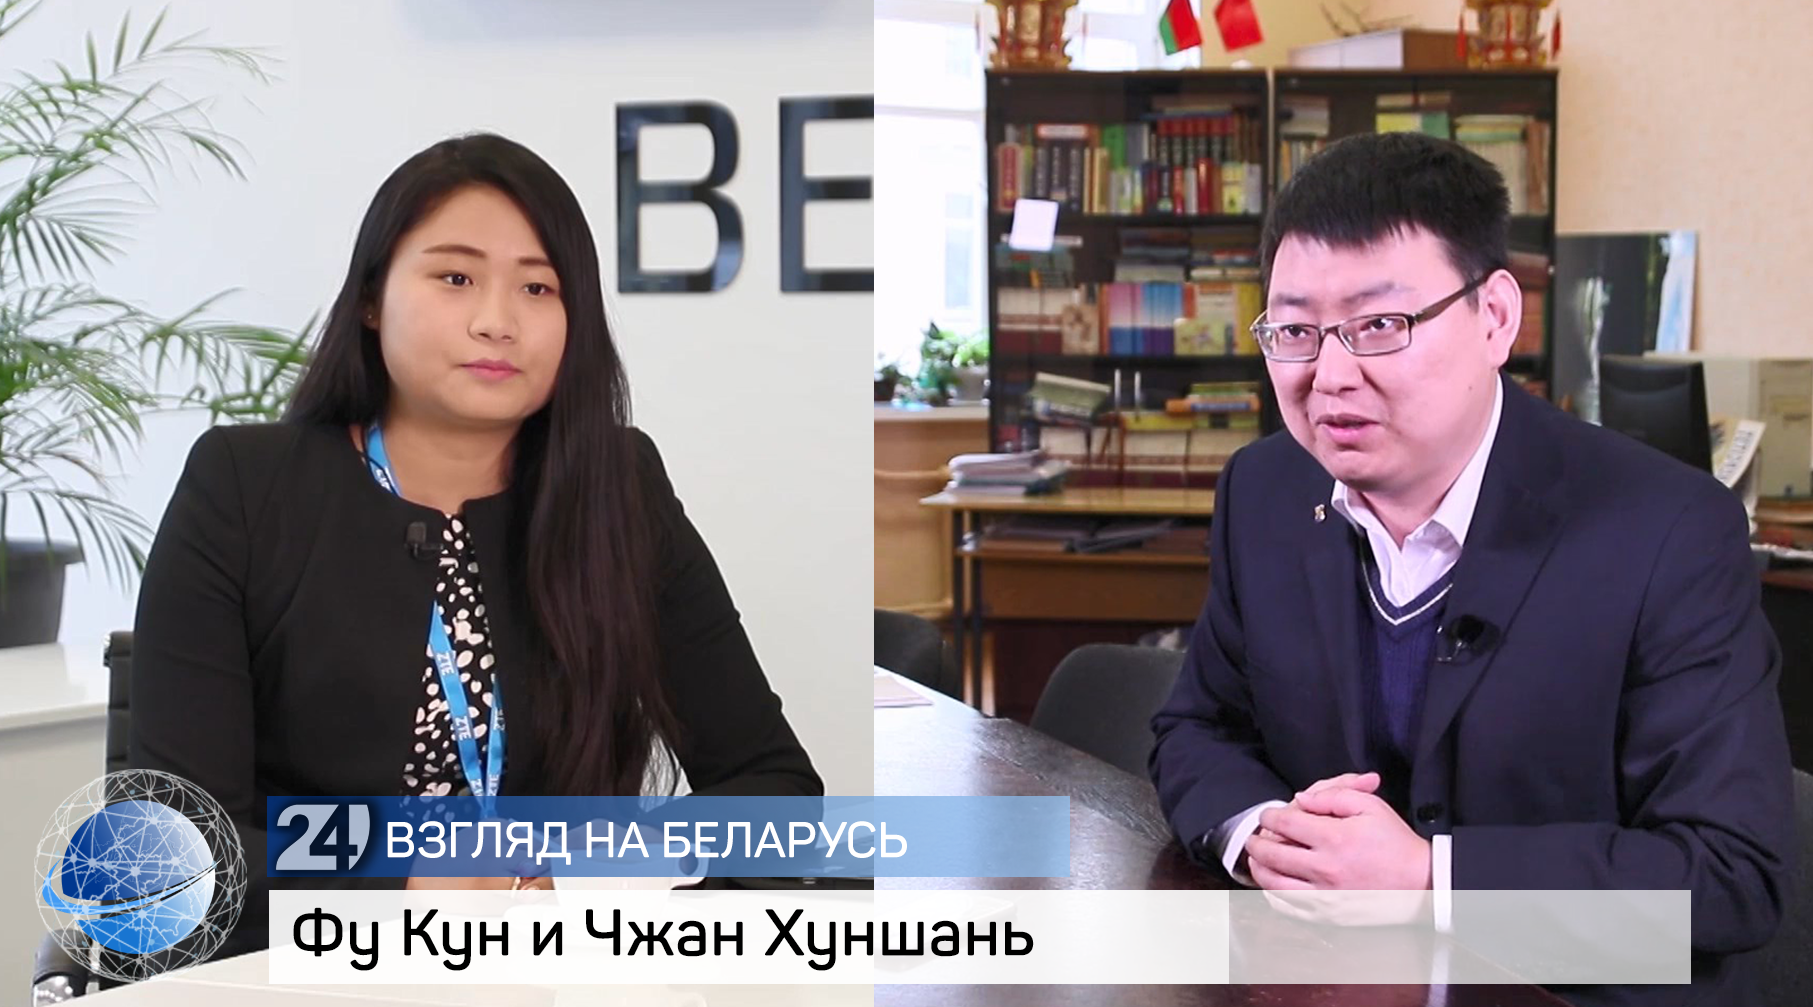 Две интересные истории китайцев об учёбе и карьере в Беларуси